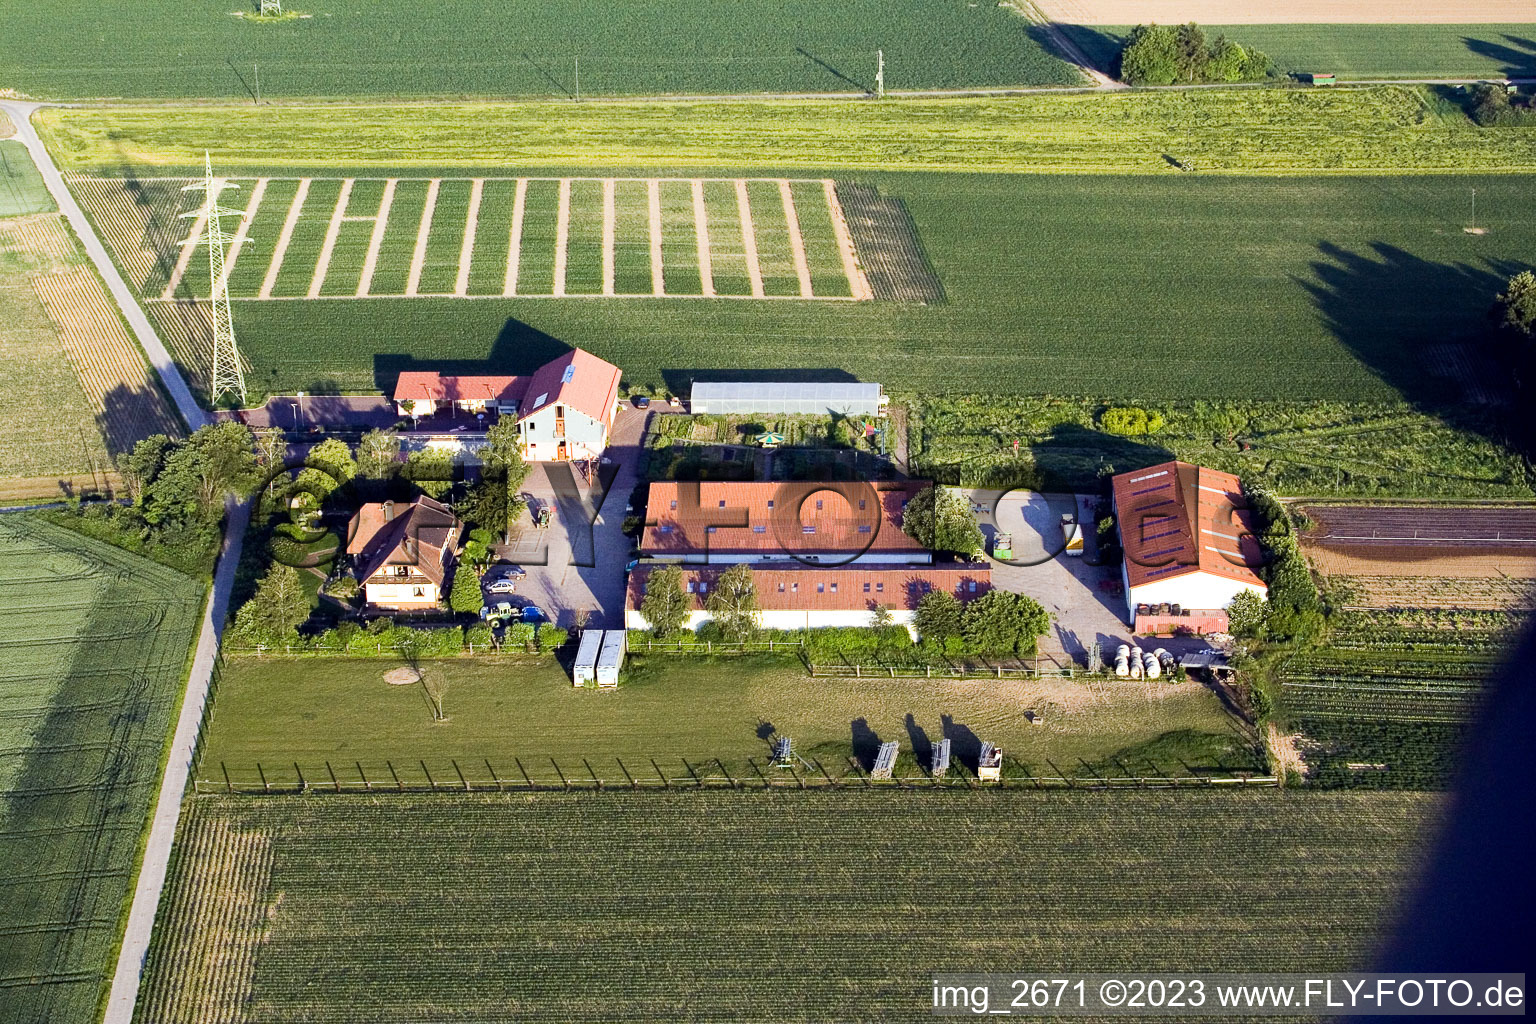 Schössberghof à Minfeld dans le département Rhénanie-Palatinat, Allemagne vue du ciel